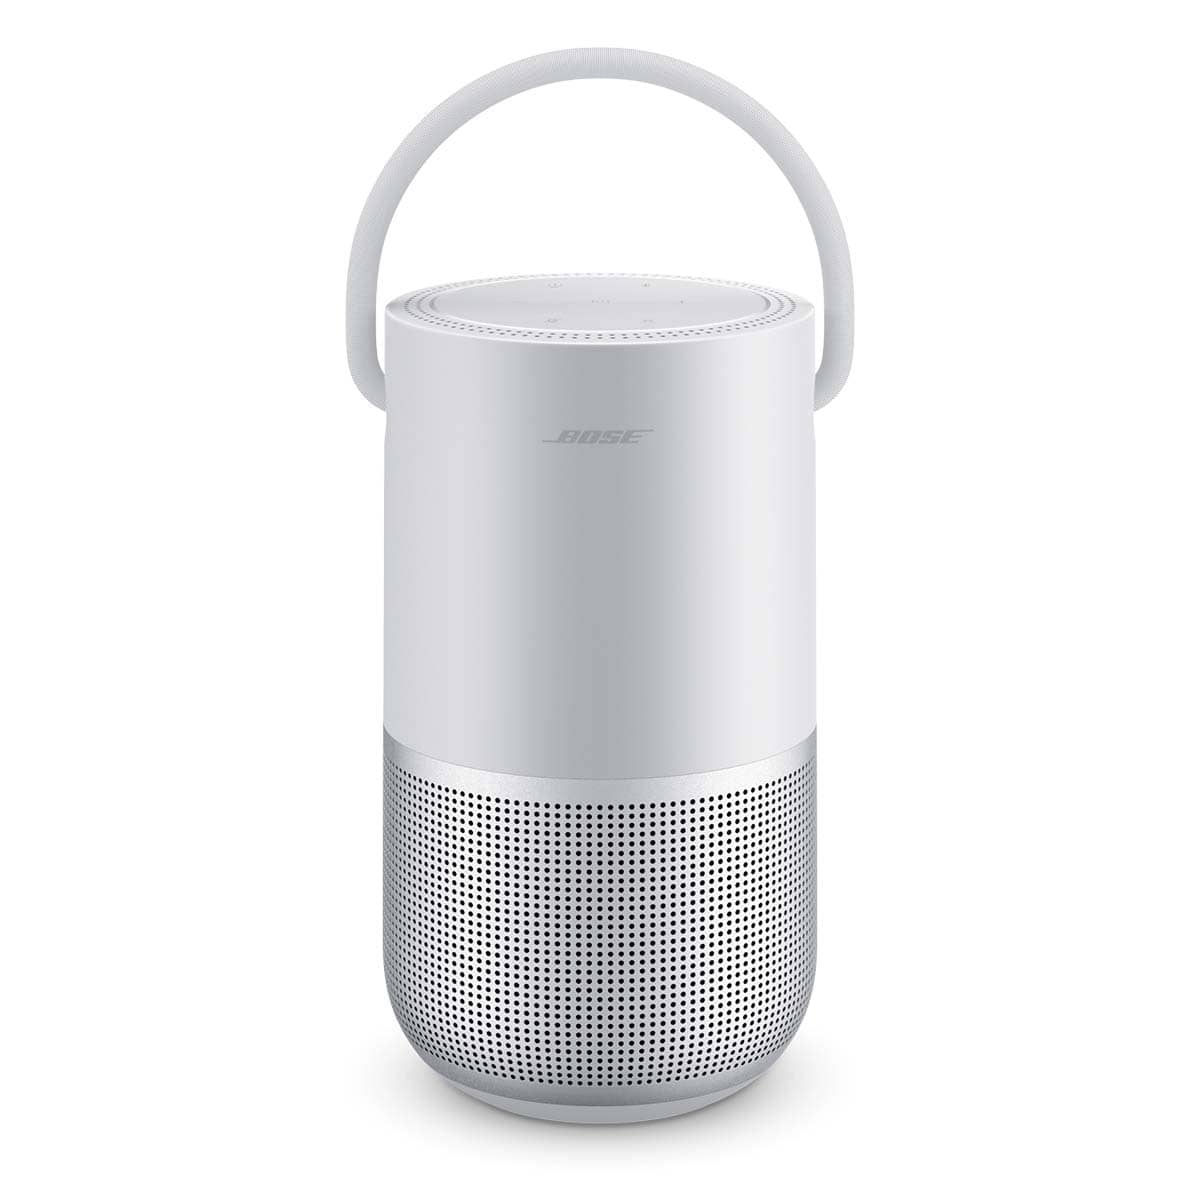 Bose Portable Smart Speaker - SKR Communications